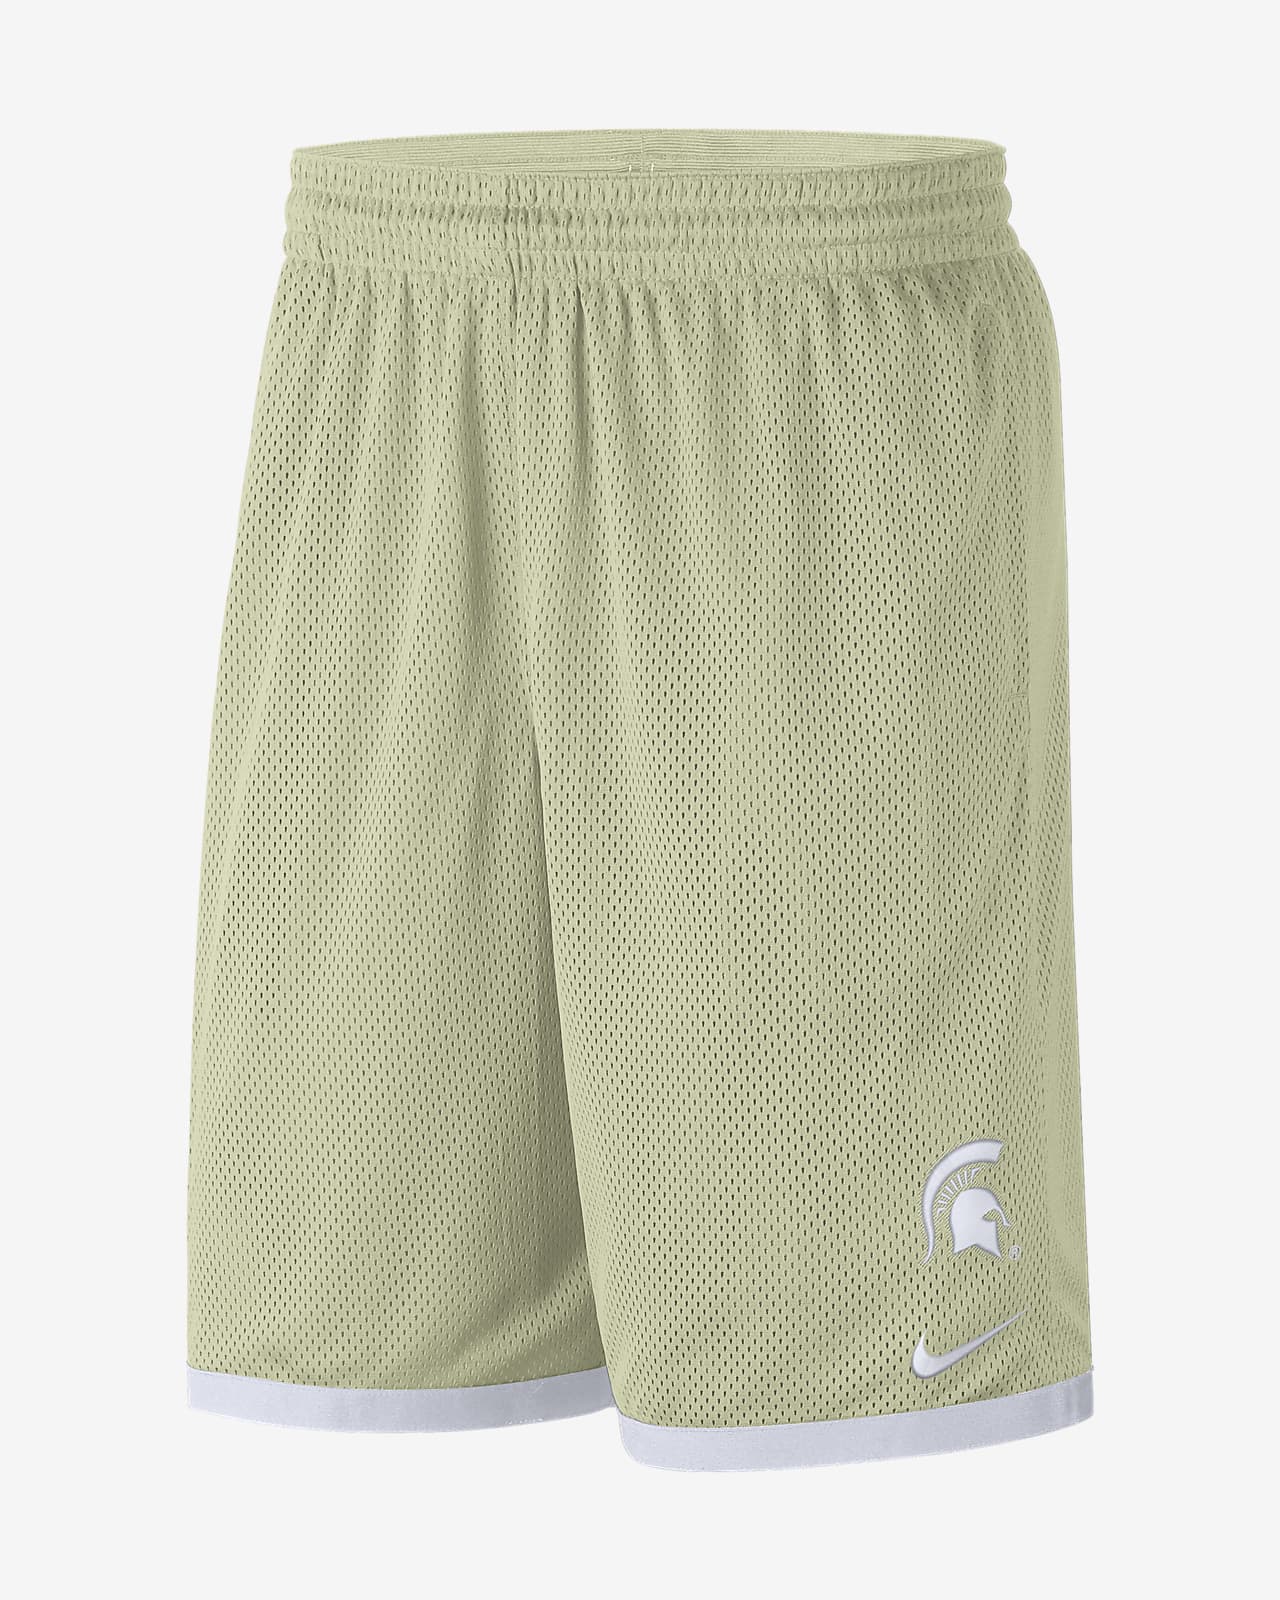 Nike College Dri-FIT (Michigan State) Men's Shorts